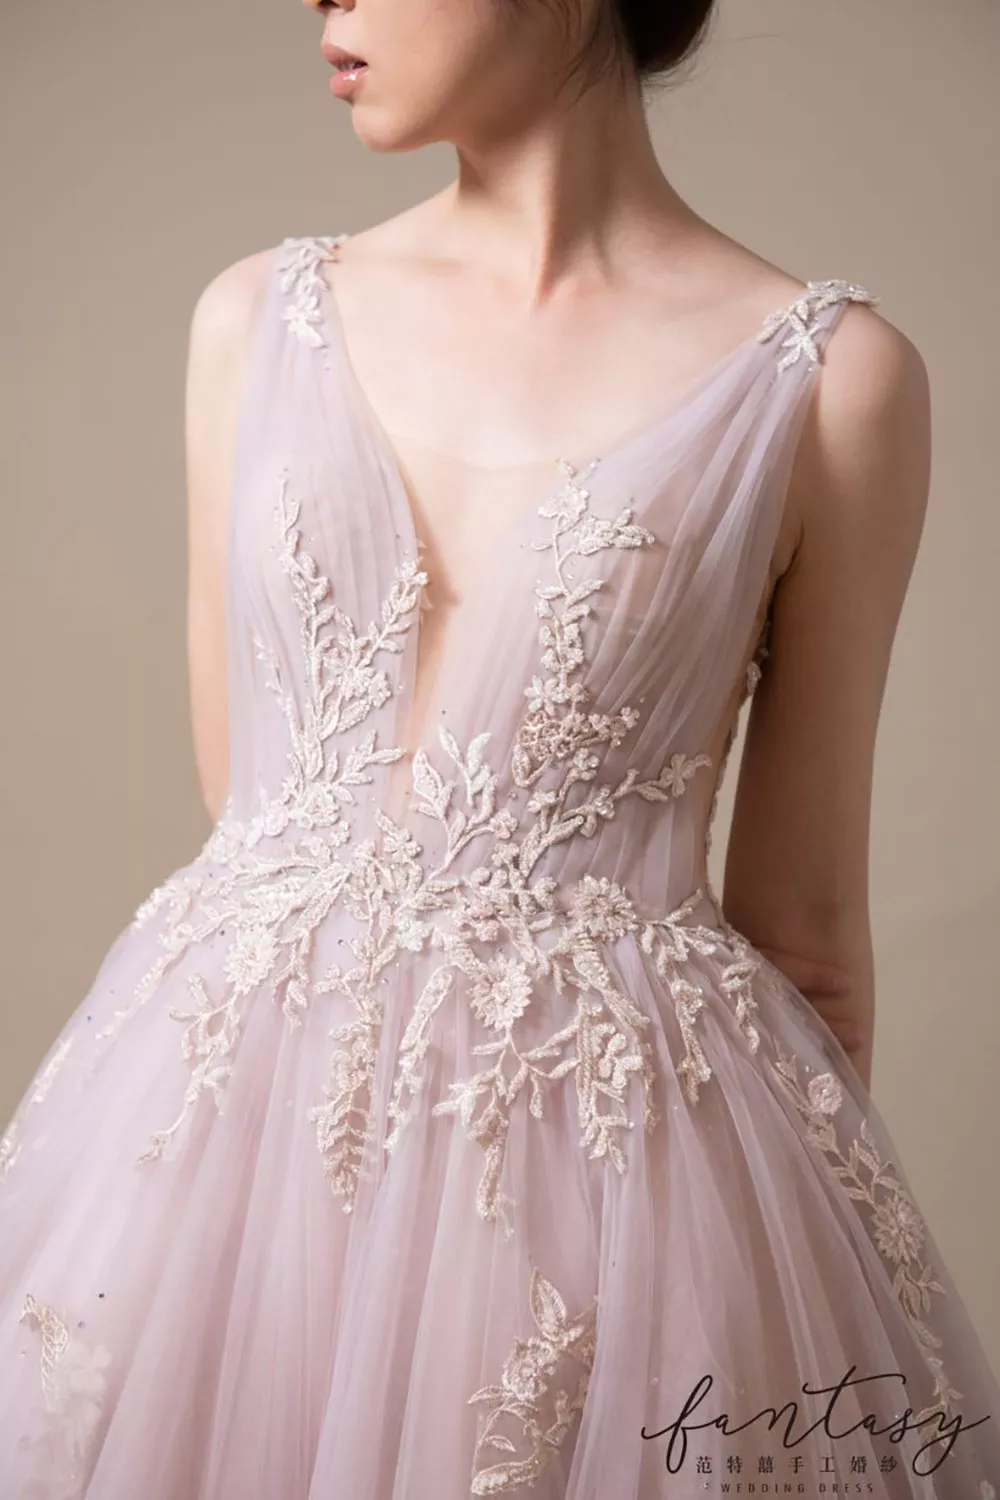 粉色系訂婚禮服顏色可展現新娘迷人的甜美感。